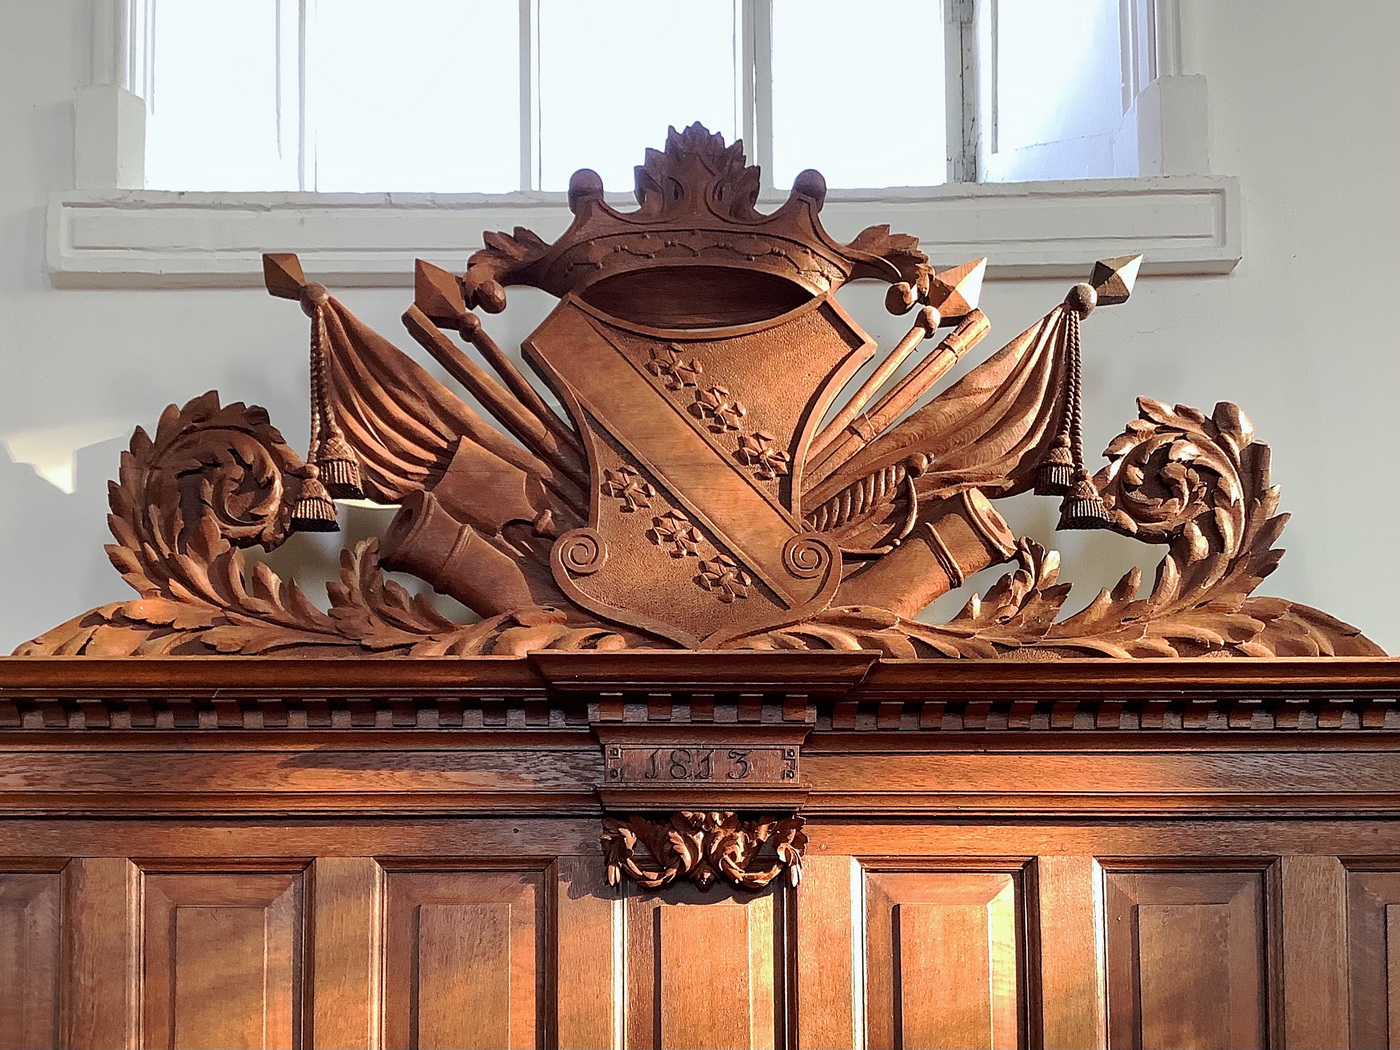 Foto boven: Het wapen van de Heddema's op de herenbank in de Ned. Herv. kerkl te Finsterwolde.
Foto: ©Jur Kuipers 